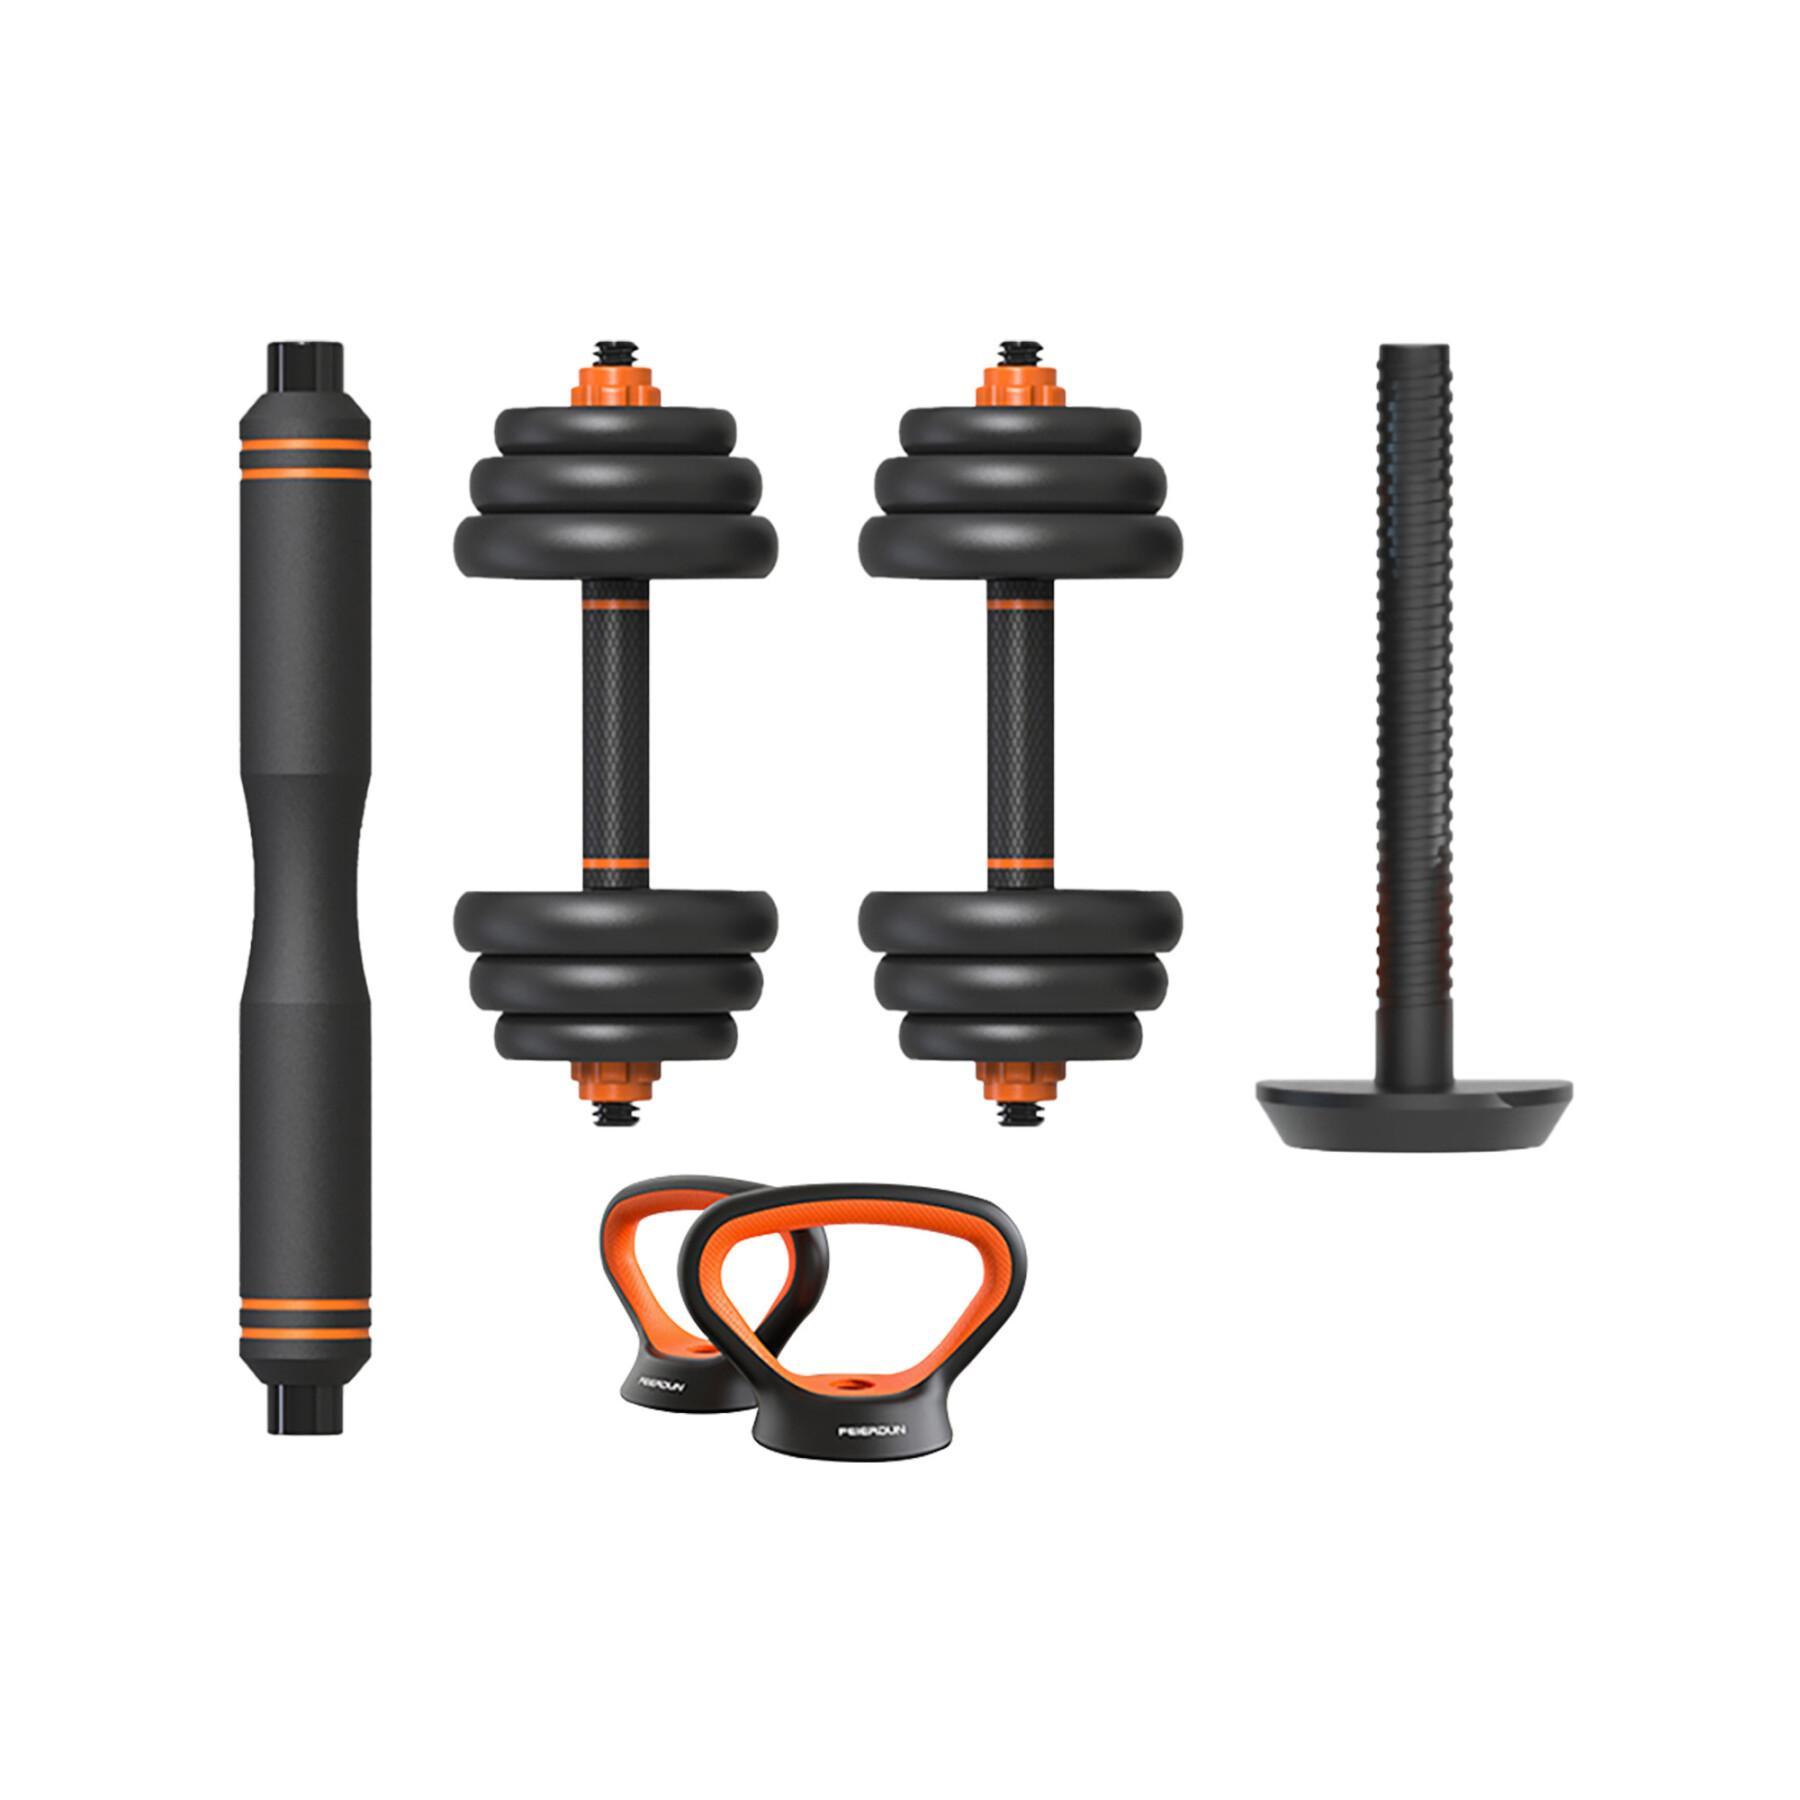 Smart kit dumbbell + bar + kettlebell + sensor Xiaomi Fed 20 kg